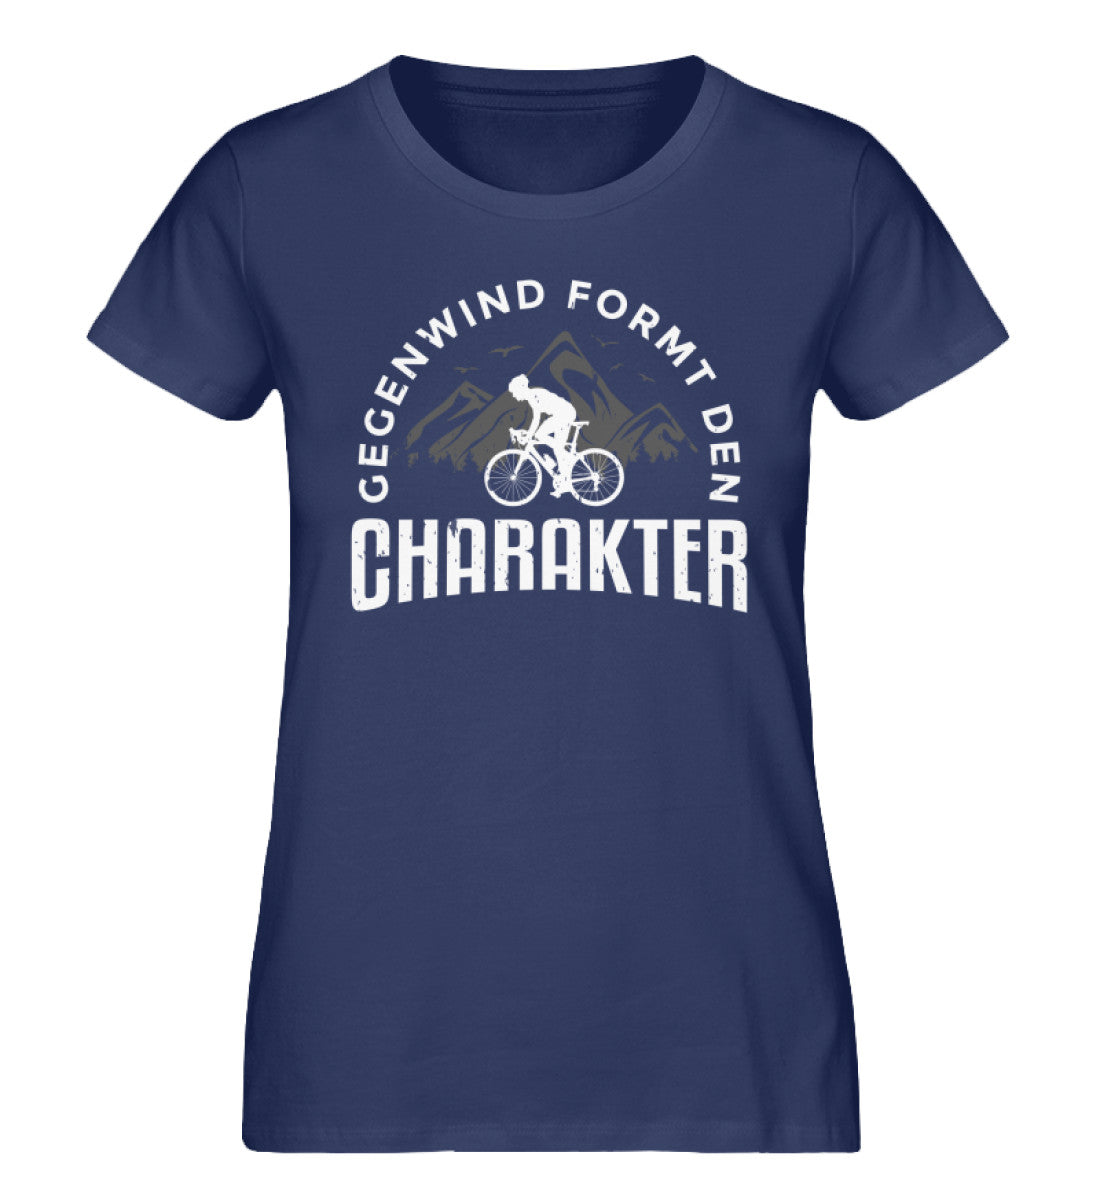 Gegenwind formt den Charakter - Damen Organic T-Shirt fahrrad mountainbike Navyblau